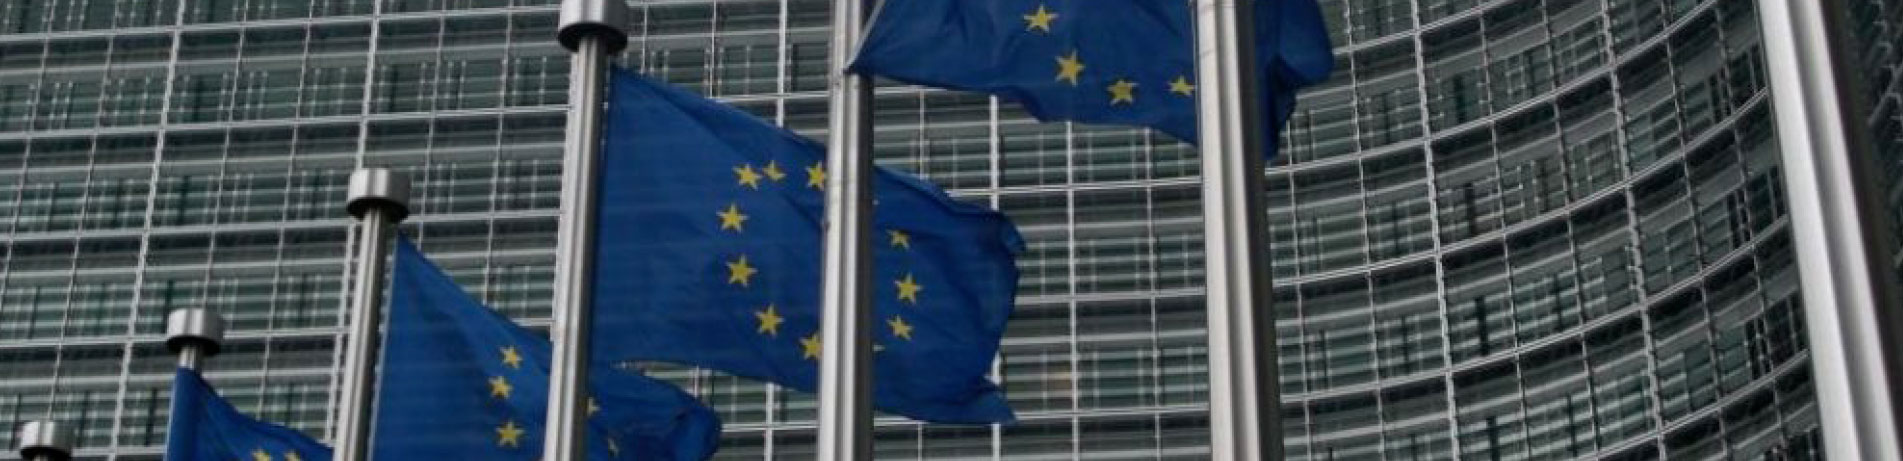 EU flags, Brussels, Belgium